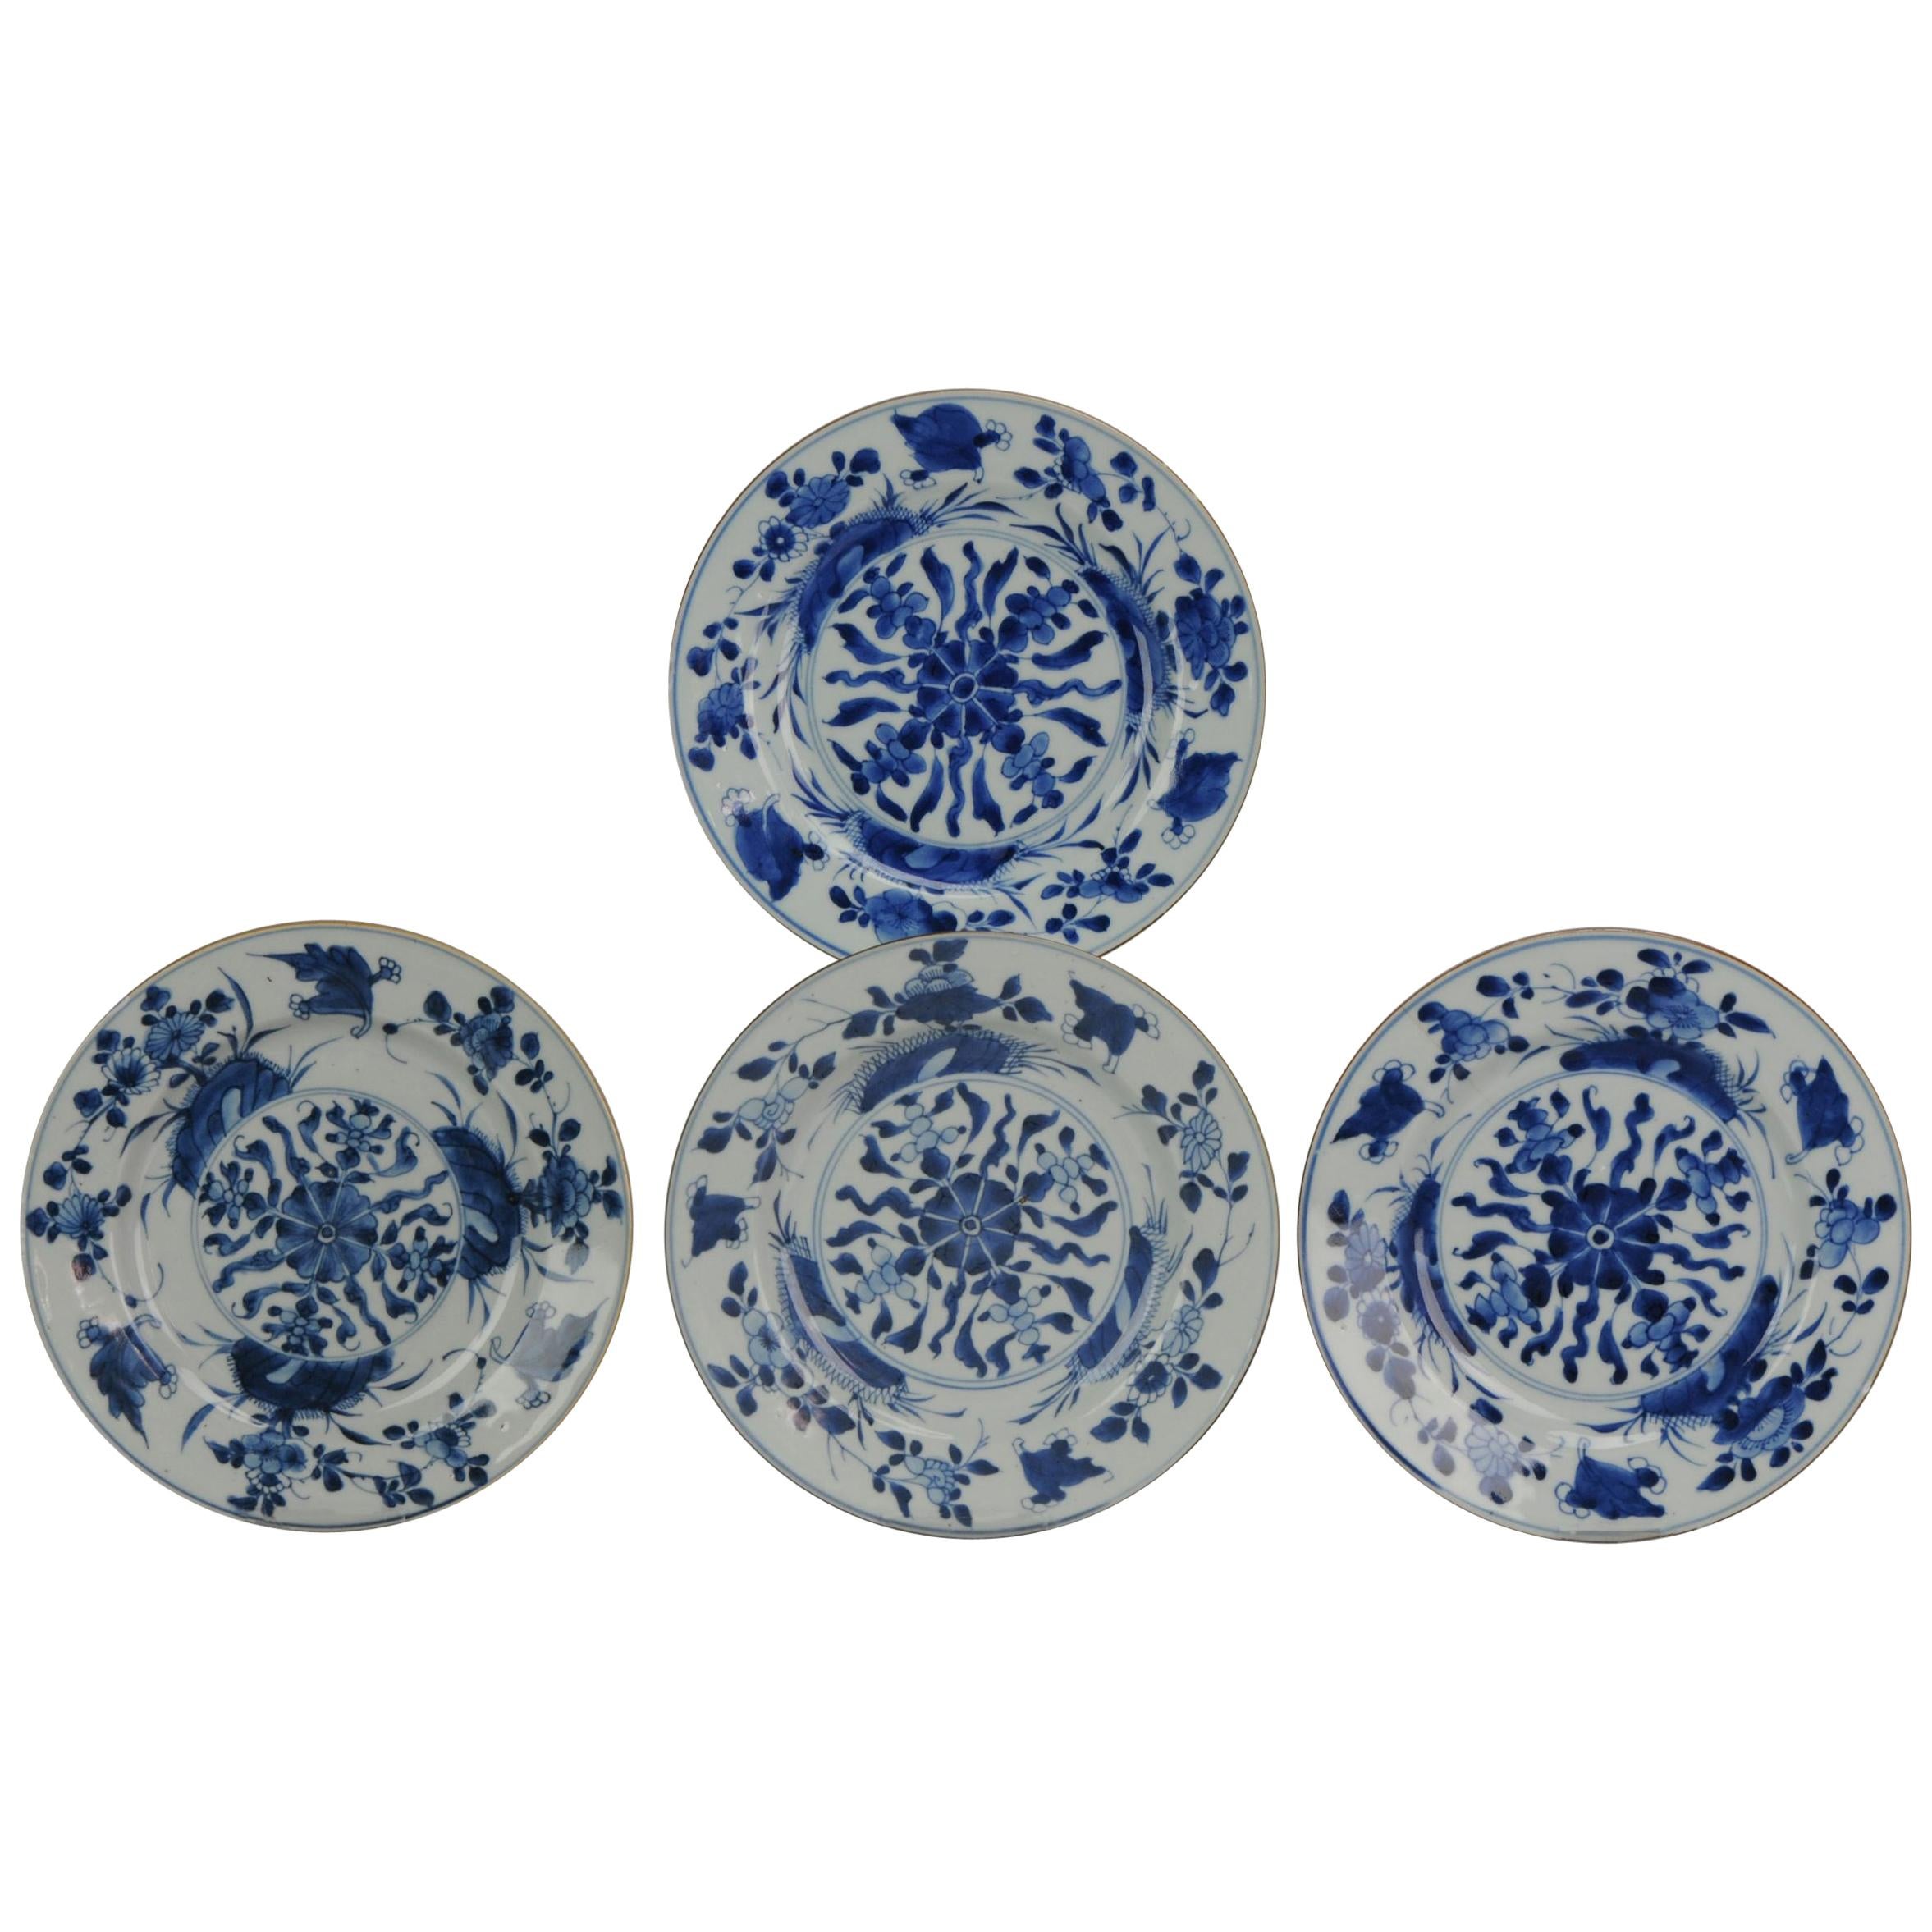 Assiette de table ancienne en porcelaine chinoise bleue et blanche de la période Kangxi du 18ème siècle